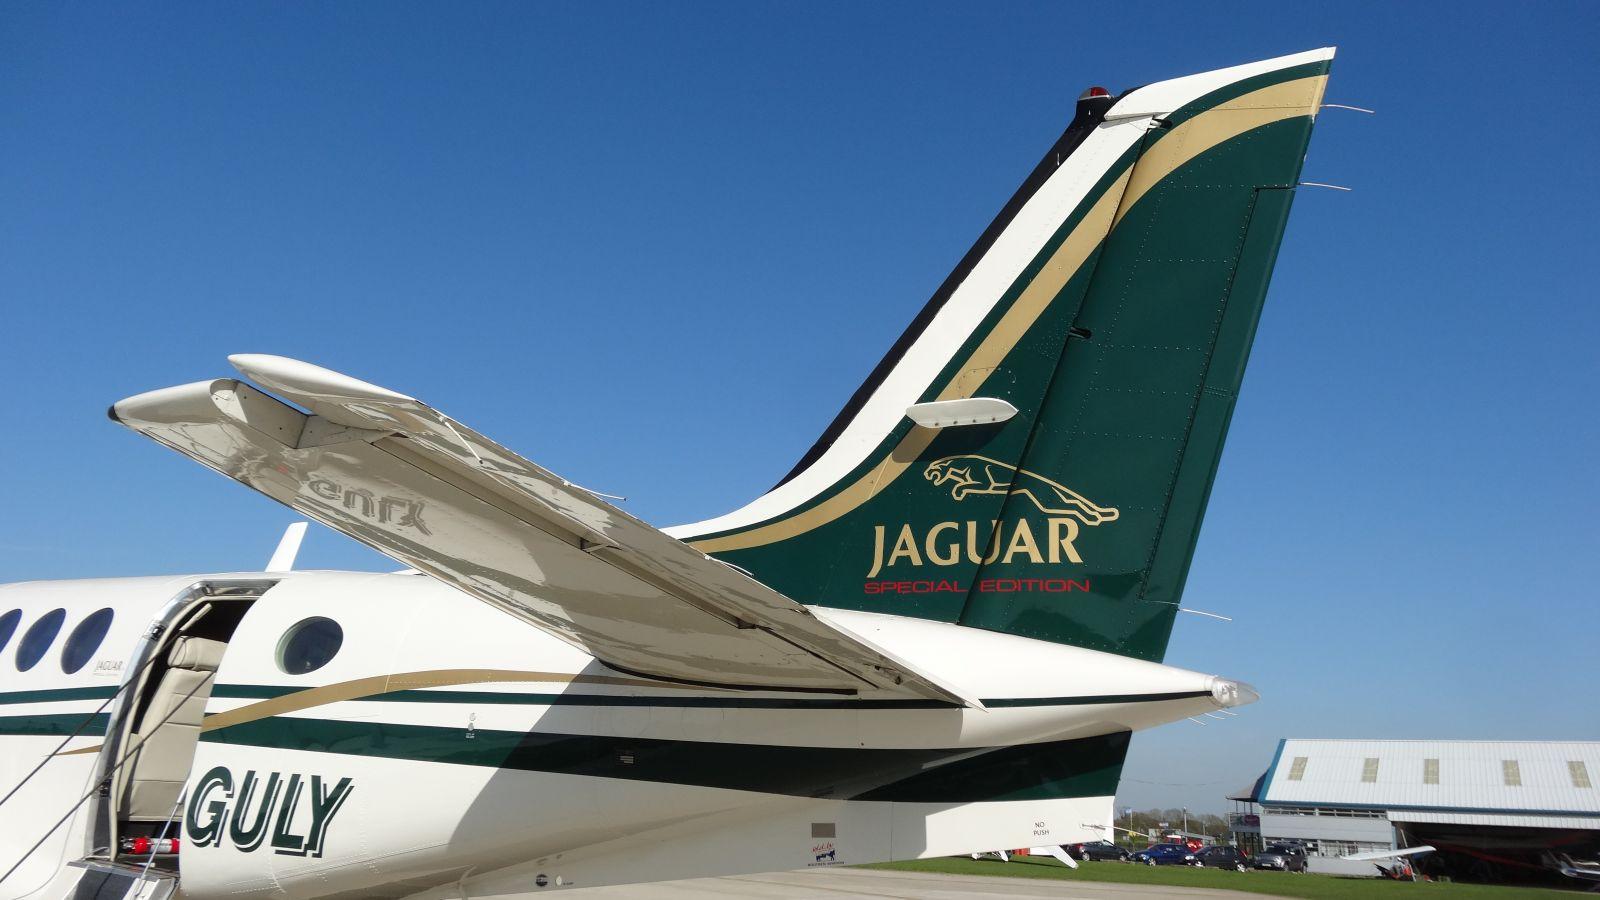 Jaguar Car and Aircraft 7